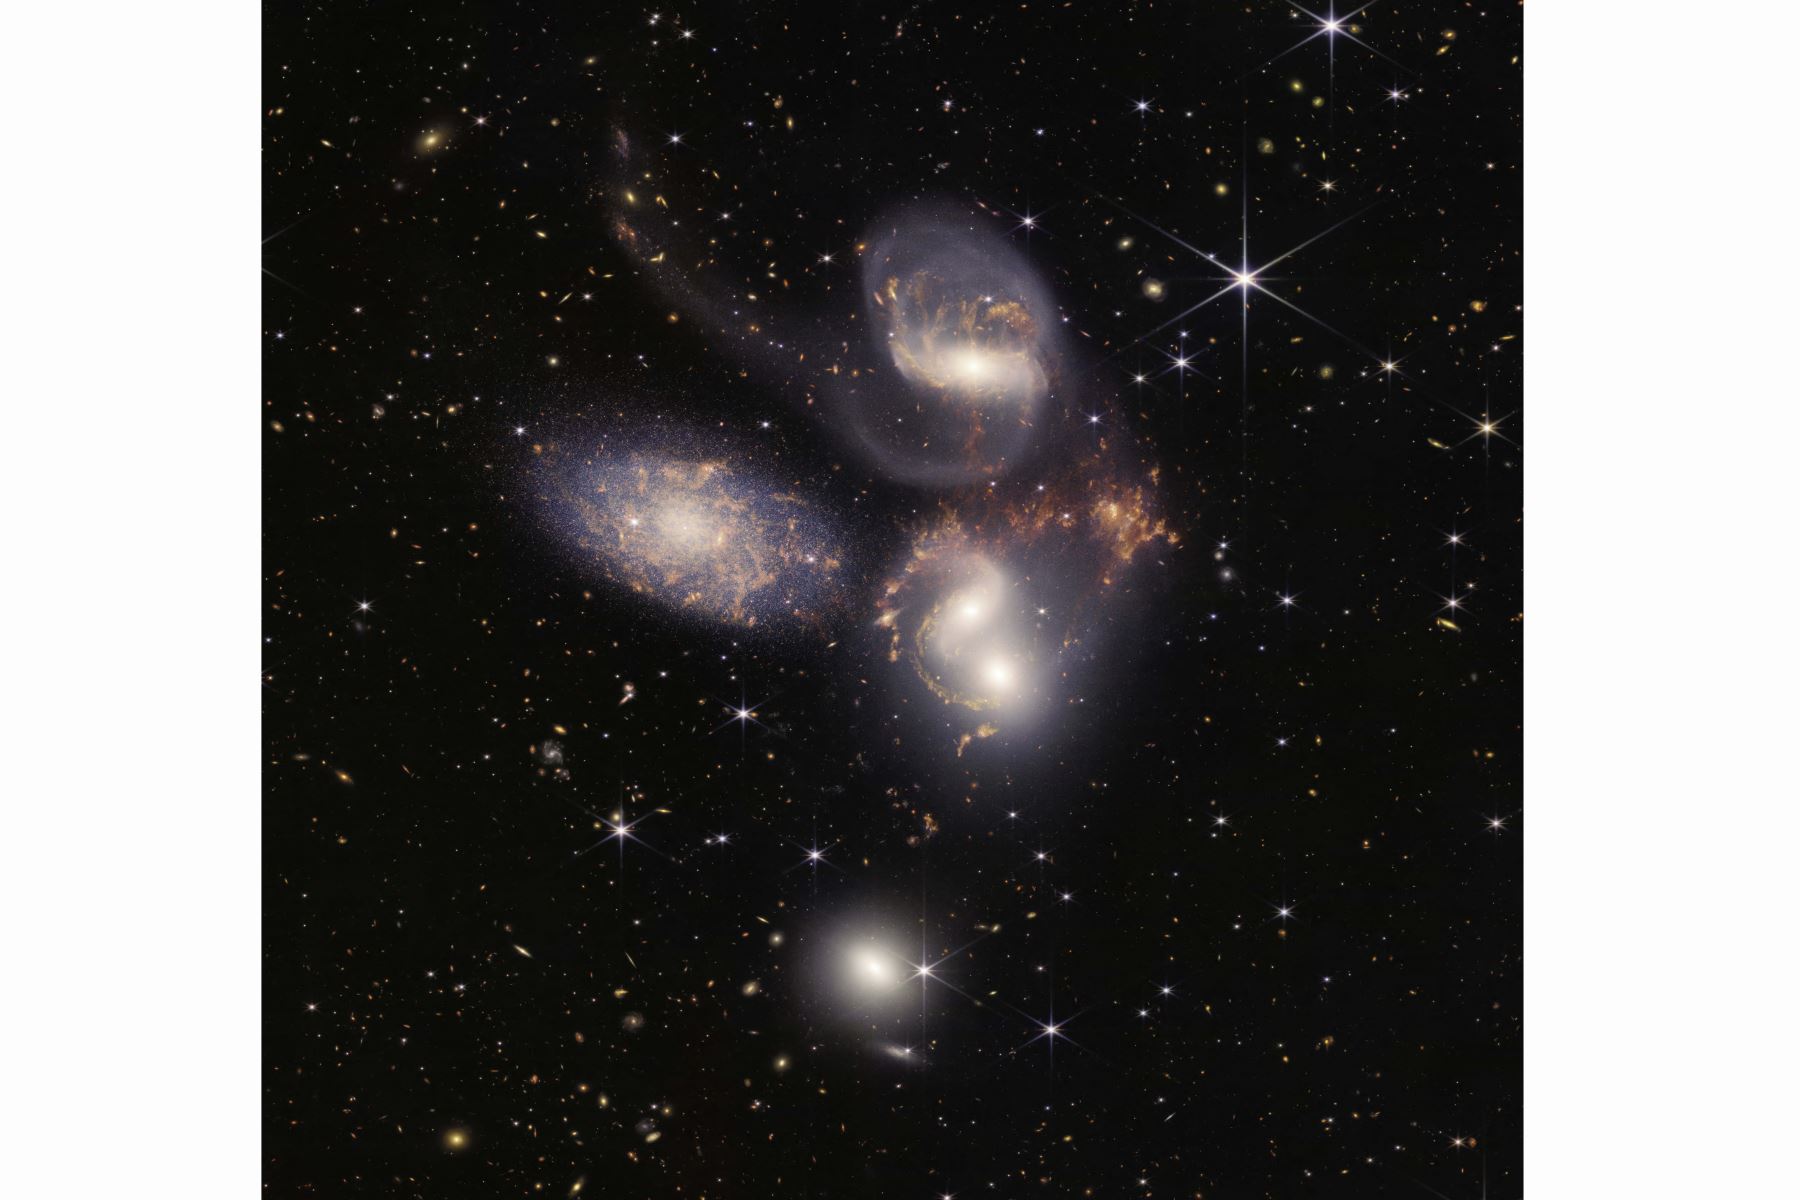 Esta imagen publicada por la NASA muestra el Quinteto de Stephan capturado por el Telescopio Espacial James Webb, una agrupación visual de cinco galaxias, bajo una nueva luz. Este enorme mosaico es la imagen más grande del JWST hasta la fecha y cubre aproximadamente una quinta parte del diámetro de la Luna. Contiene más de 150 millones de píxeles y está construido a partir de casi 1000 archivos de imagen independientes. Foto: AFP